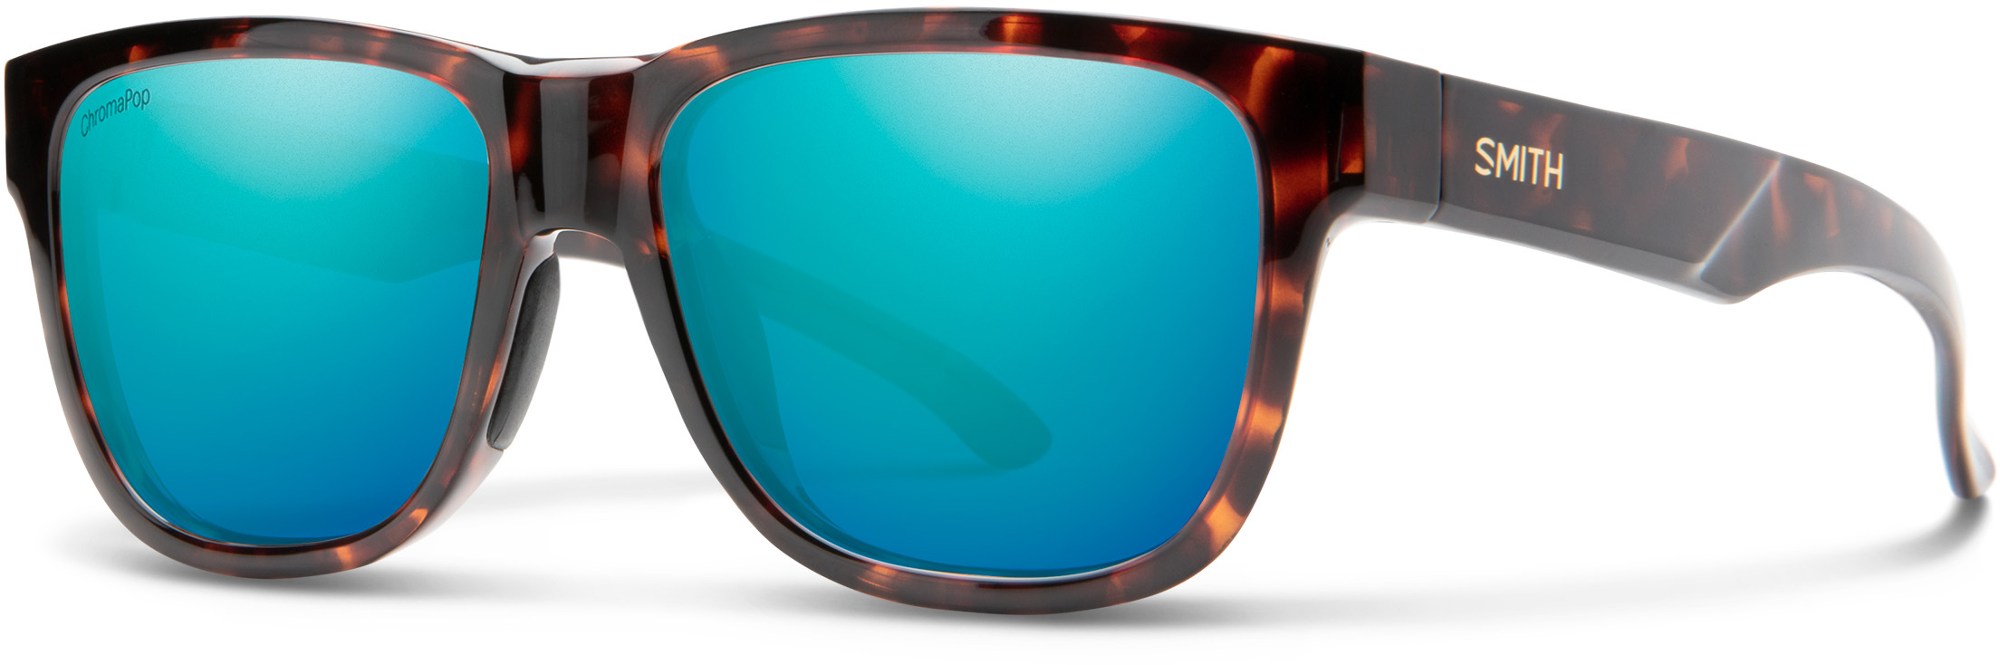 Поляризованные солнцезащитные очки Lowdown Slim 2 ChromaPop — женские Smith, коричневый